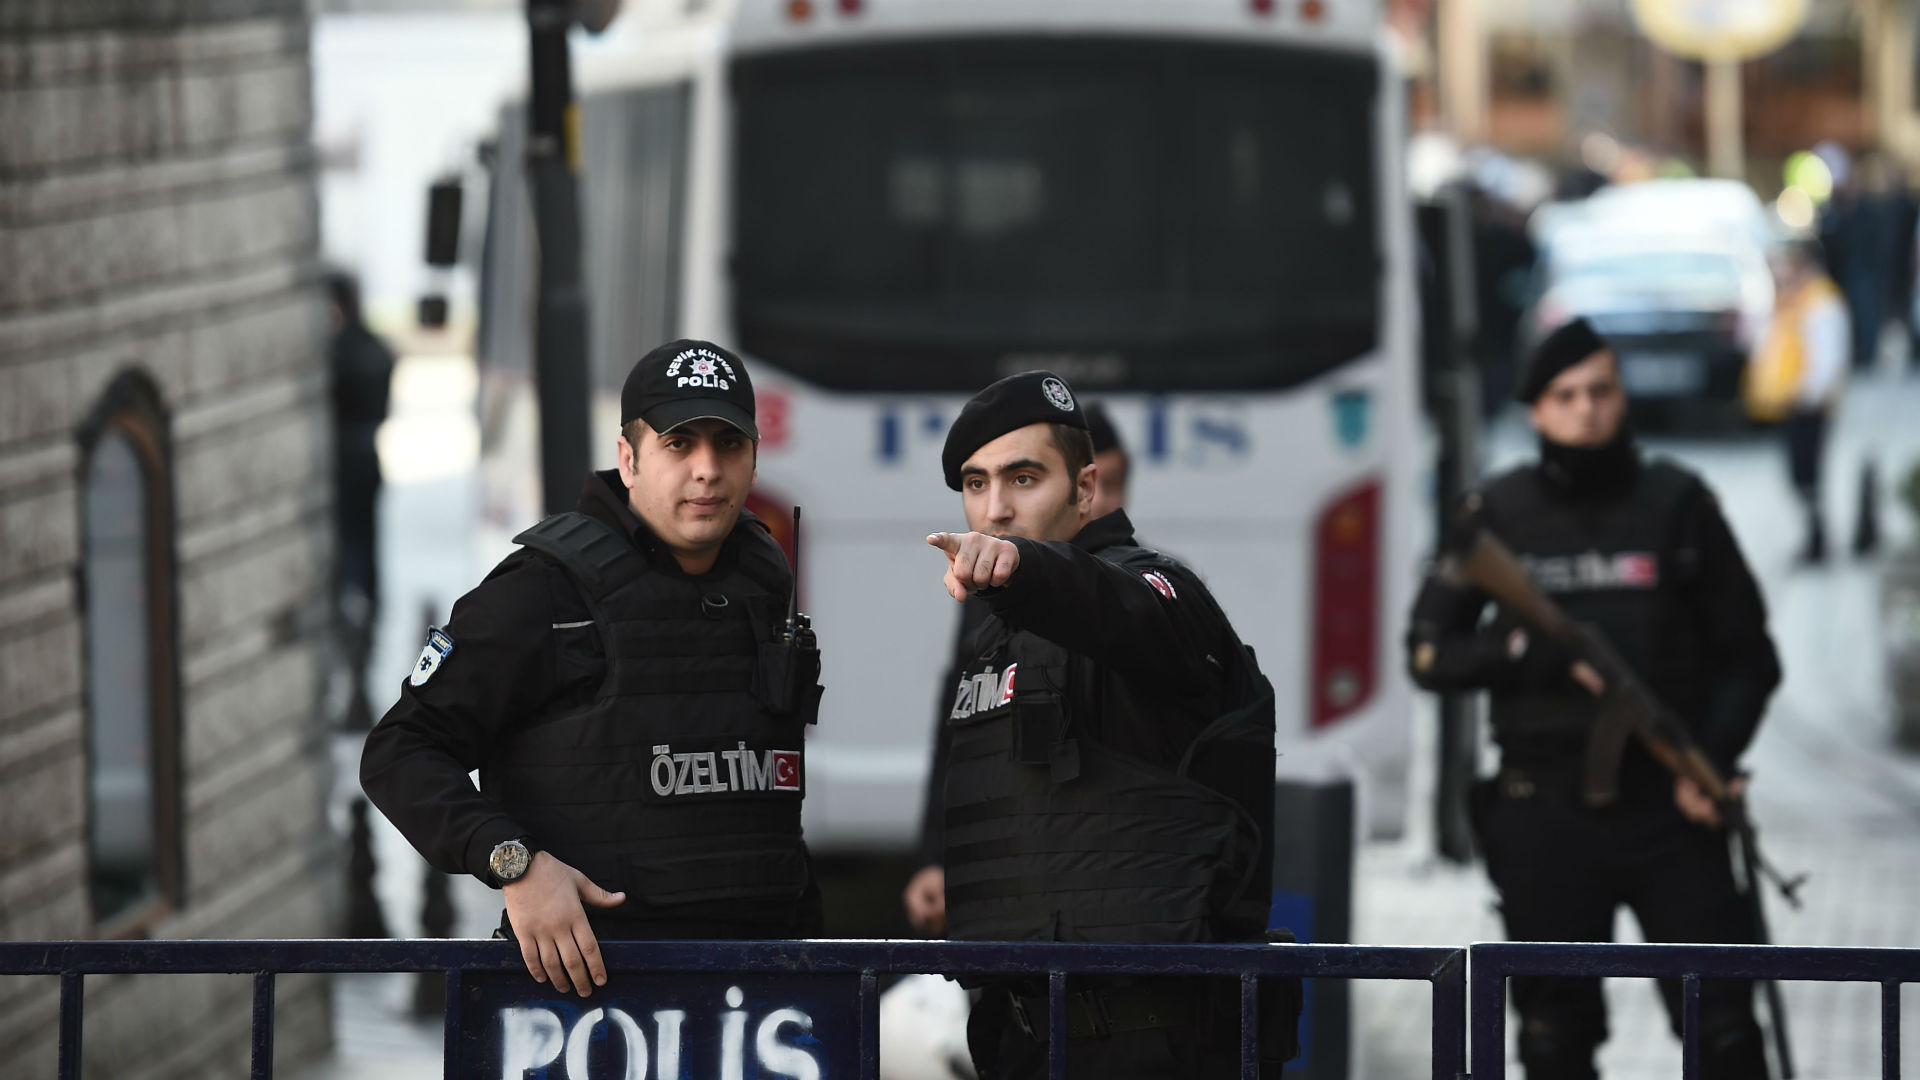 Какво се случва? За 12 часа убиха 7 жени в Турция